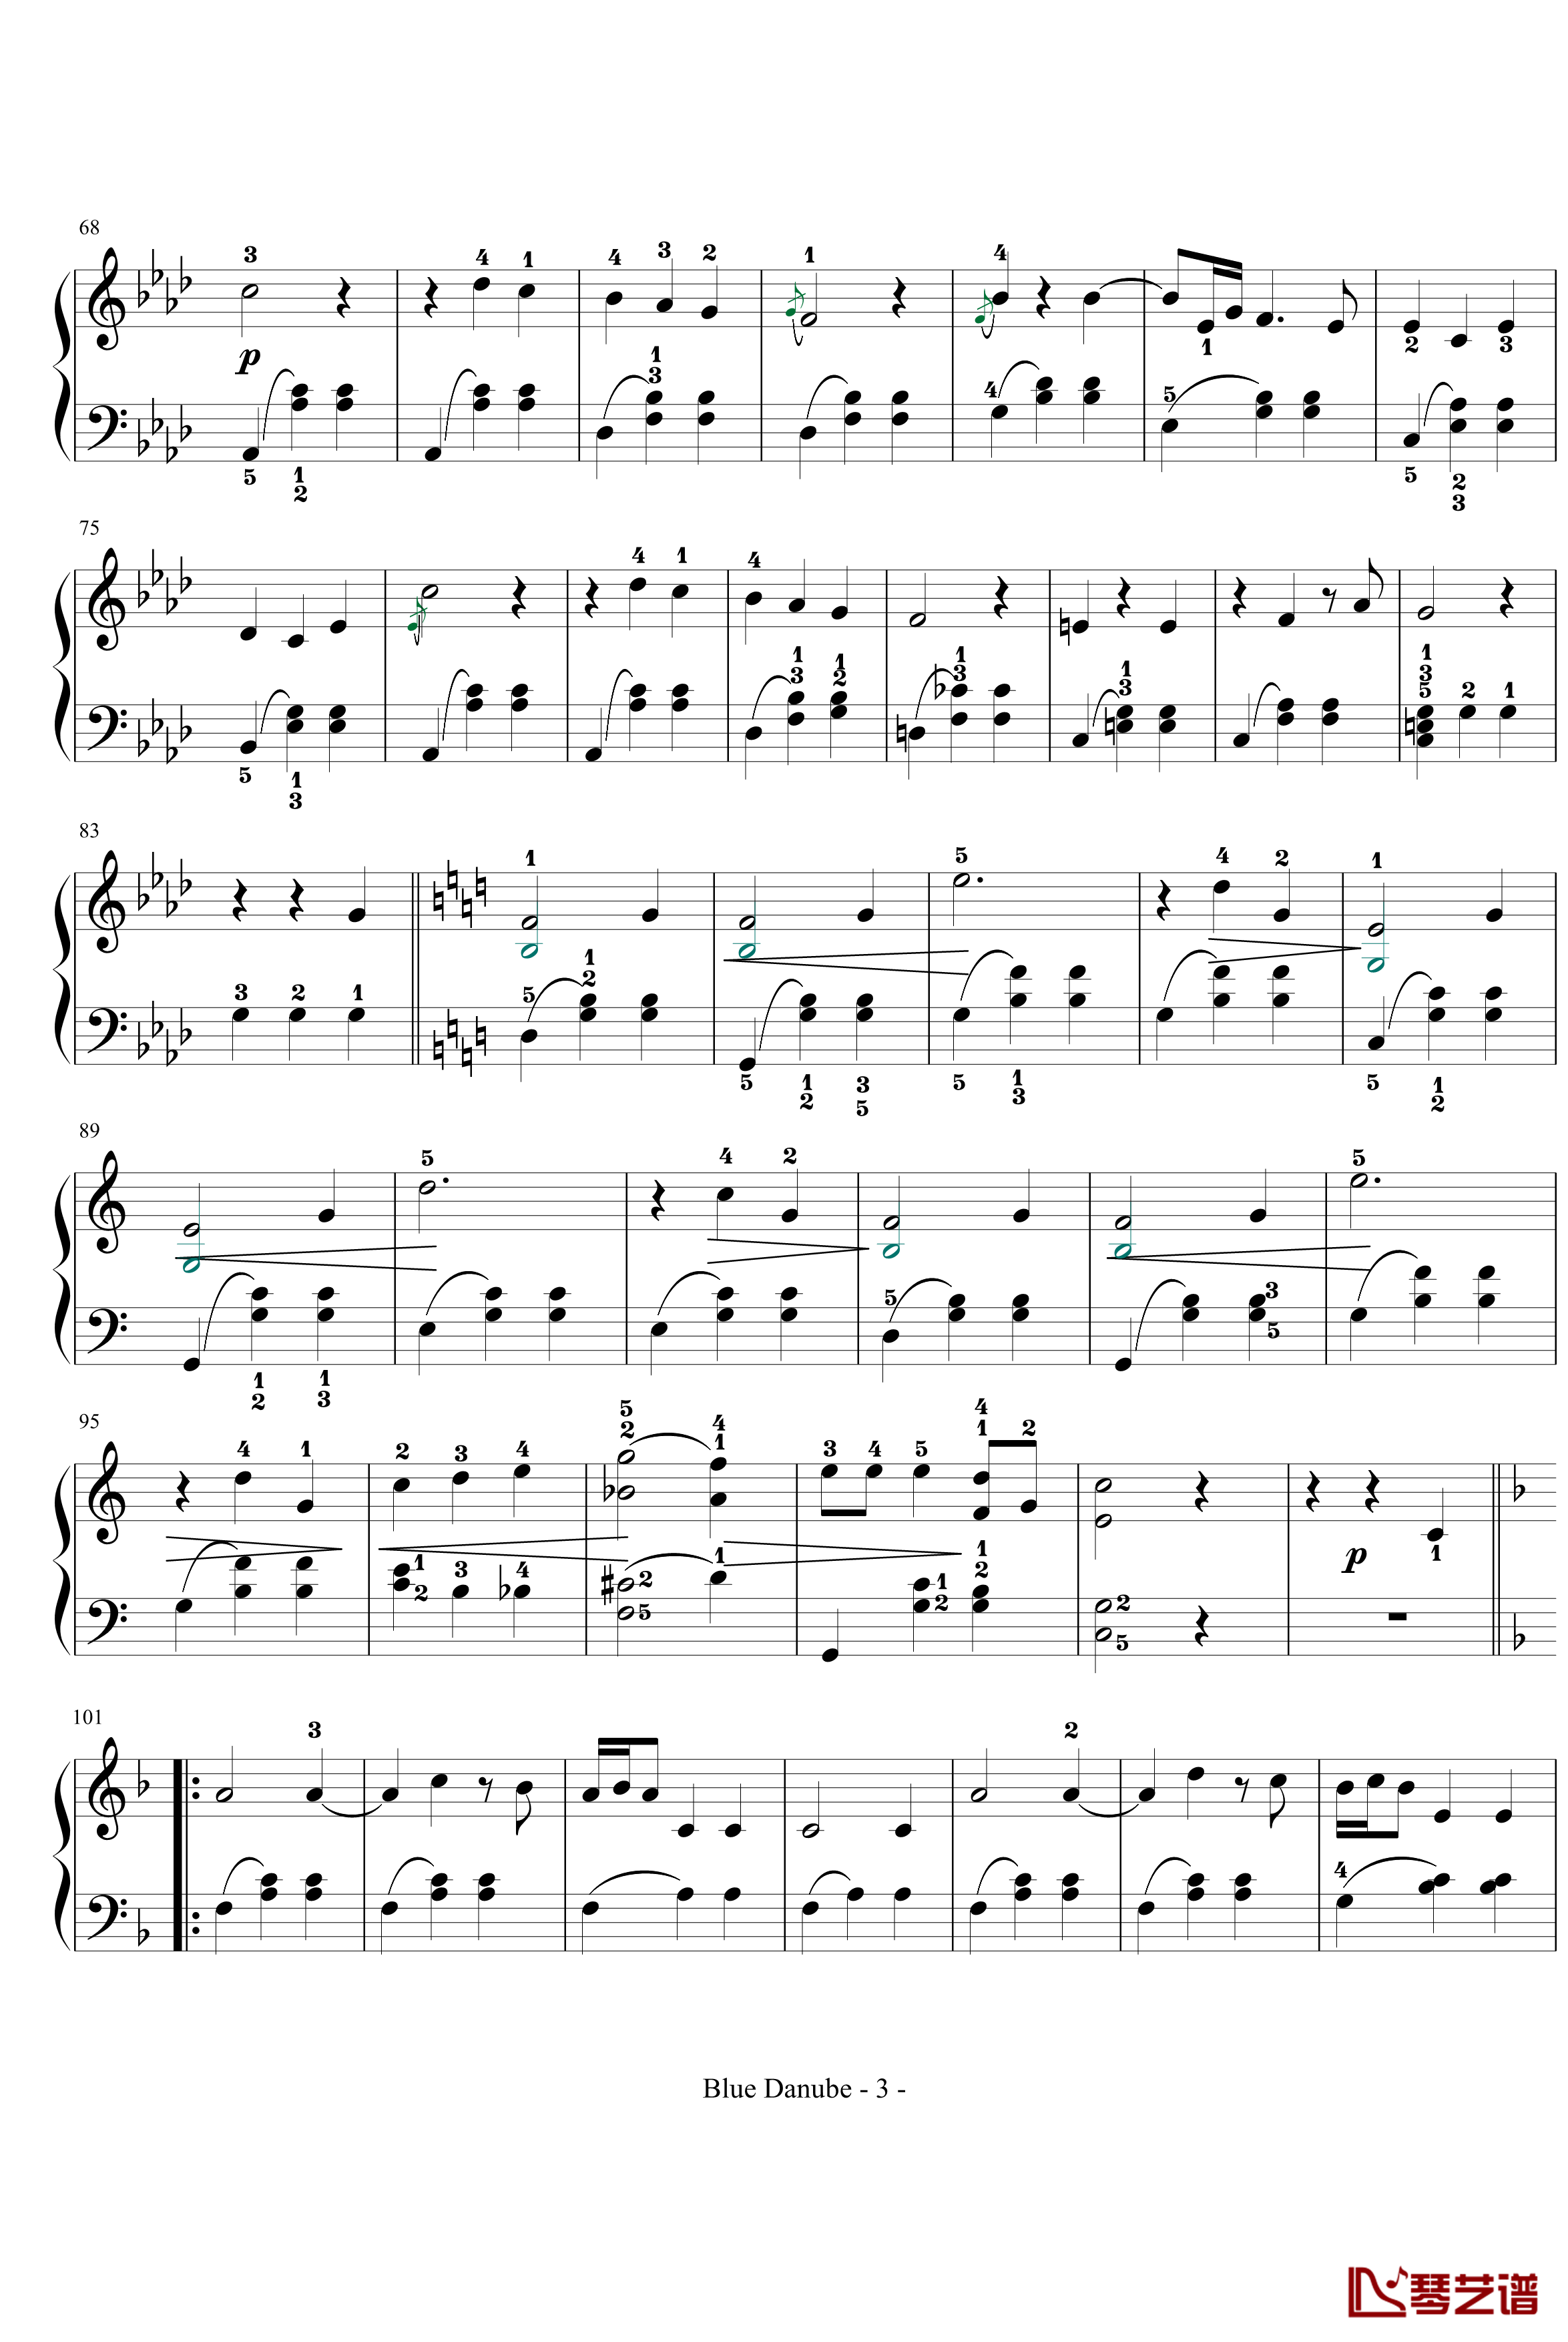 蓝色多瑙河钢琴谱-完整-带指法简化-约翰·斯特劳斯3